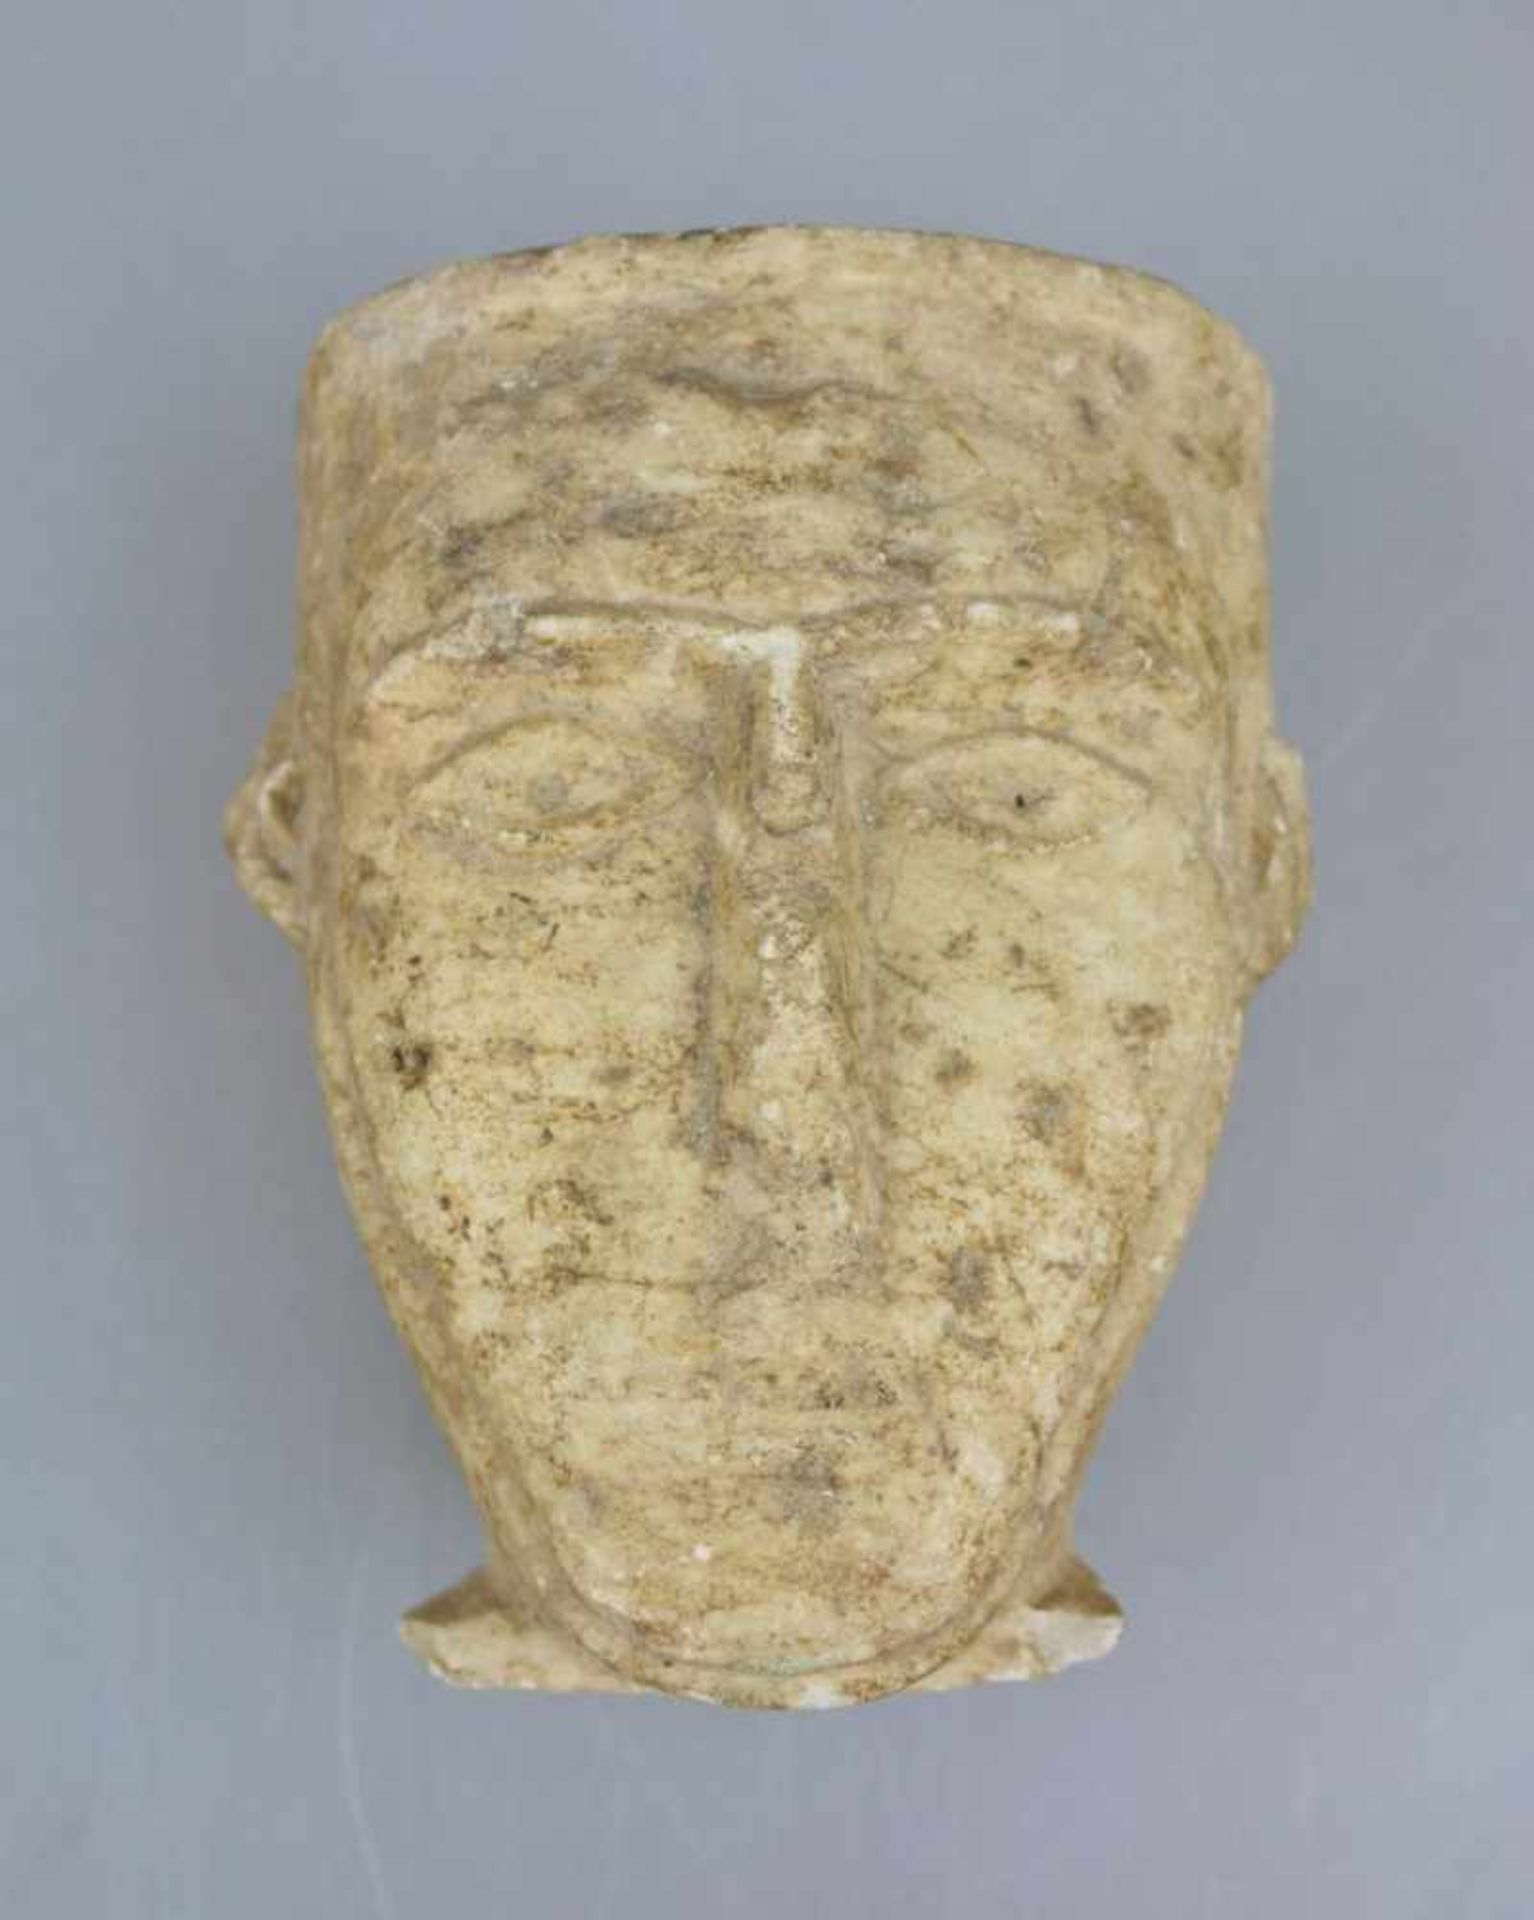 Kopf, eine Maske tragend, Stein/Quarzit, wohl Mittelmeerraum, Alter unbekannt. Der Kopf zu einer